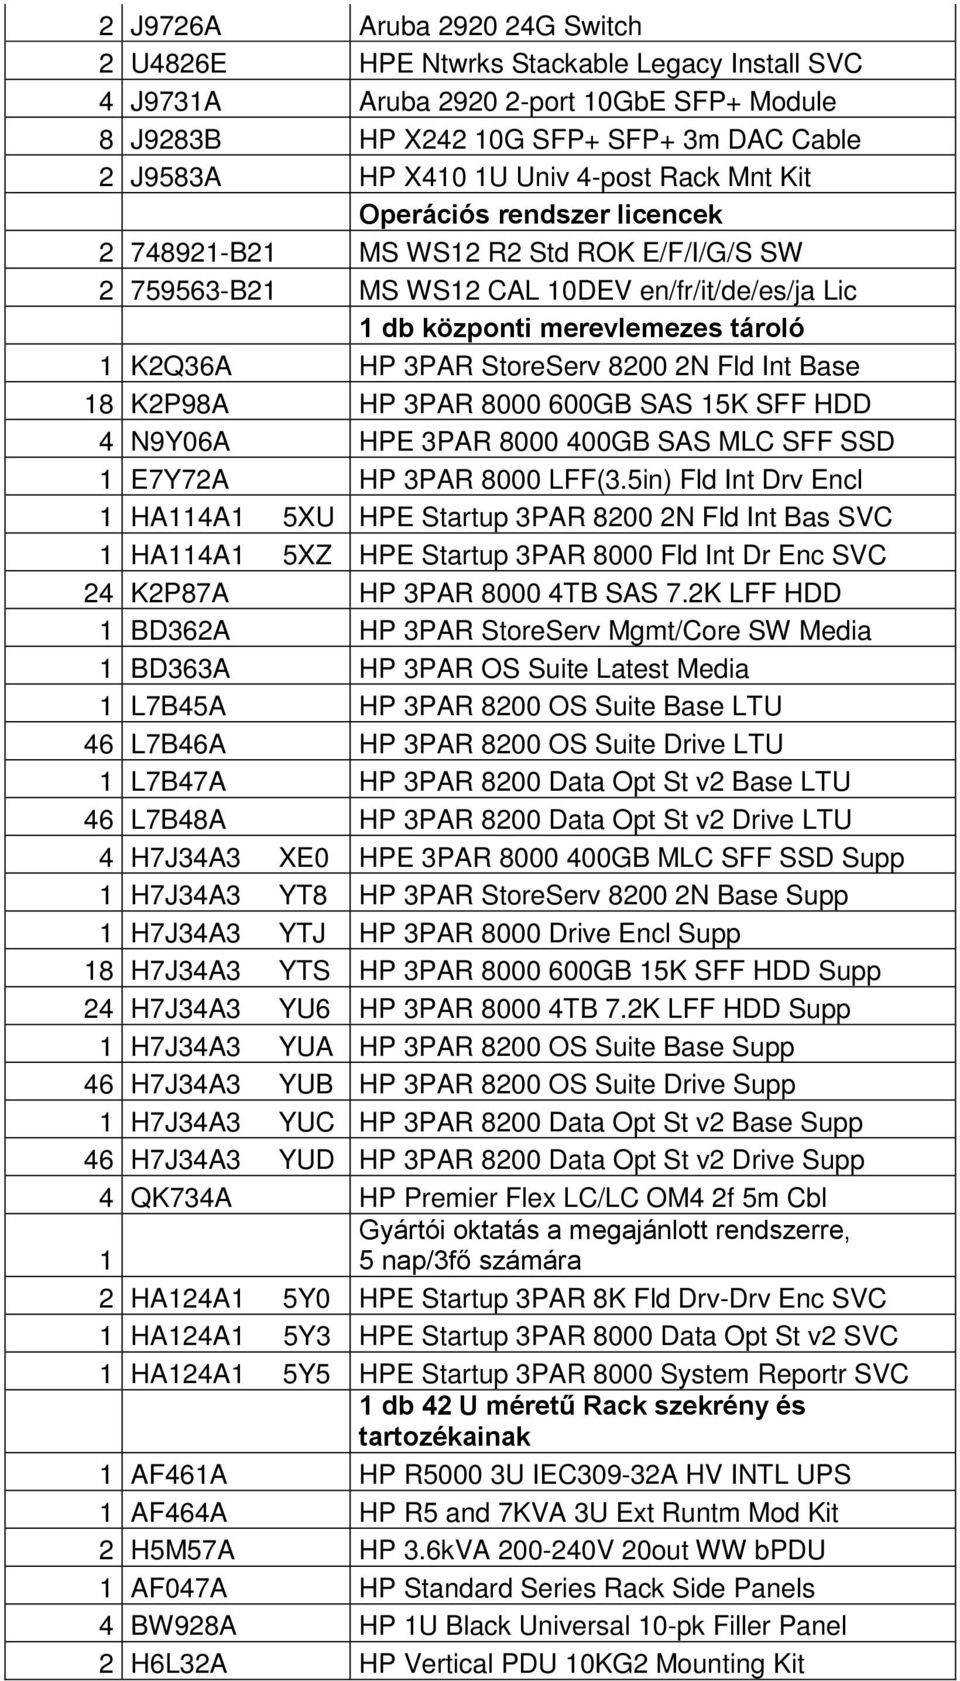 StoreServ 8200 2N Fld Int Base 18 K2P98A HP 3PAR 8000 600GB SAS 15K SFF HDD 4 N9Y06A HPE 3PAR 8000 400GB SAS MLC SFF SSD 1 E7Y72A HP 3PAR 8000 LFF(3.